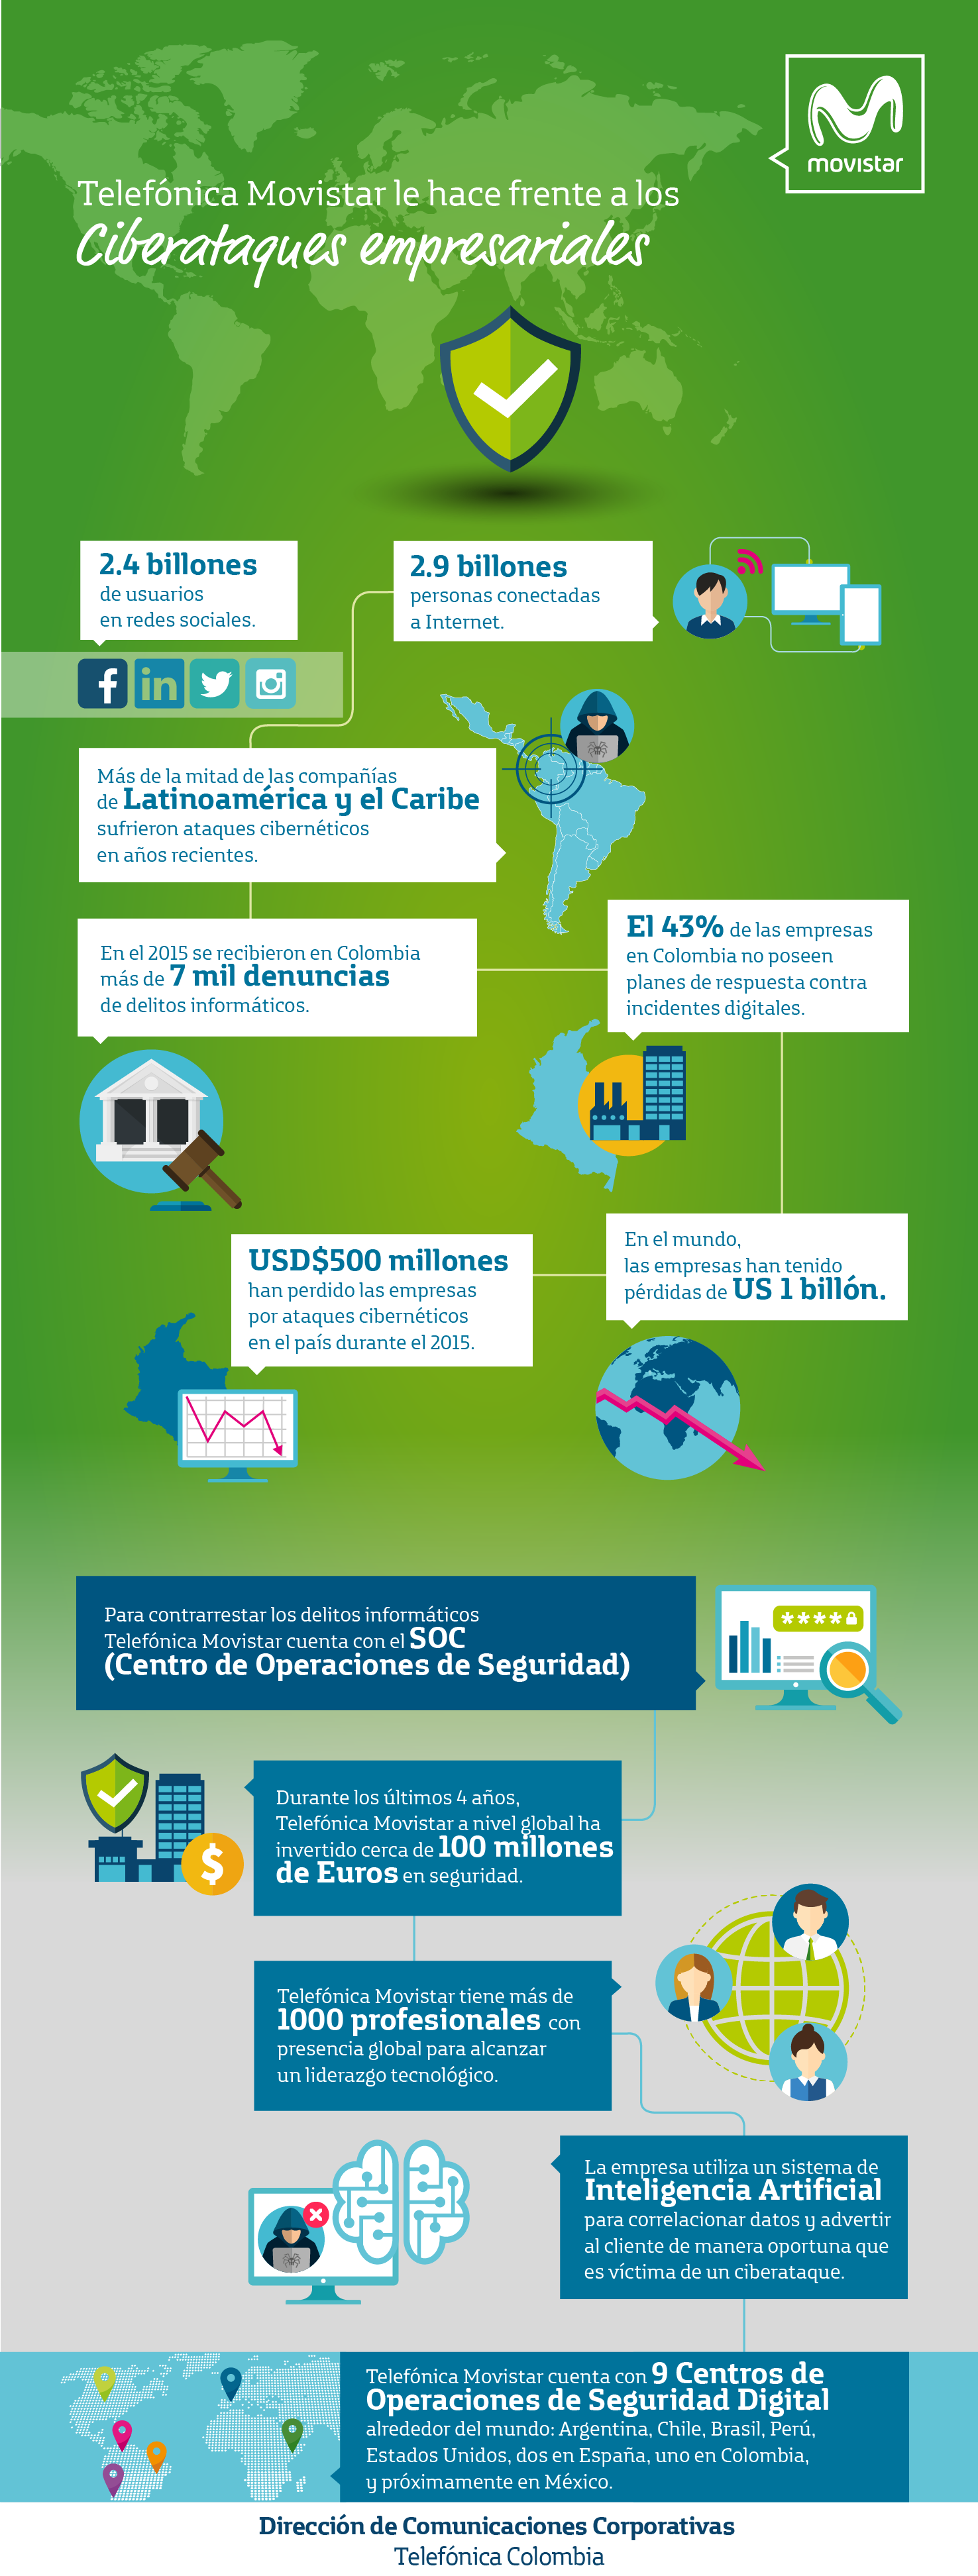 Infografia sobre Ciberataques  presentado por Telefónica Movistar